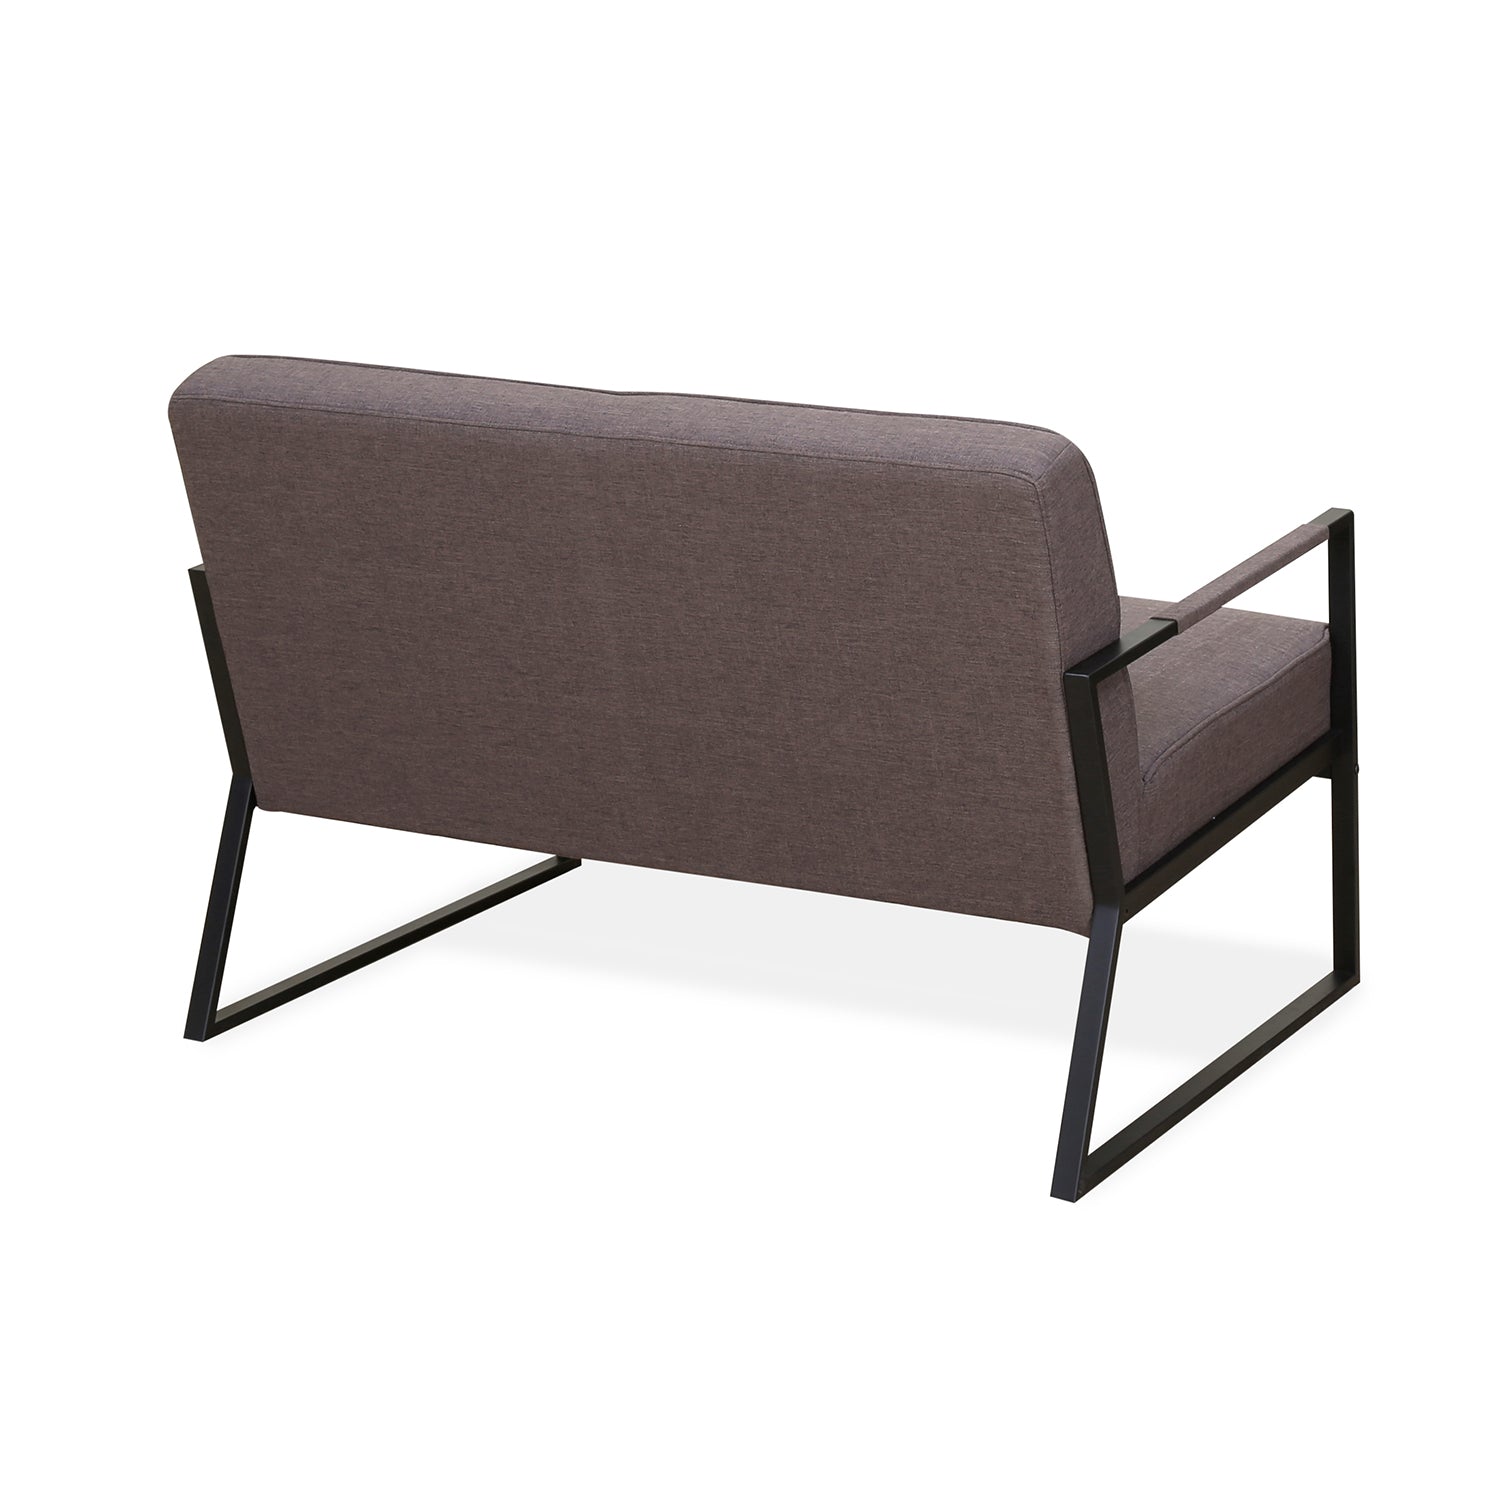 Remus 2 Seater Sofa (Dark Brown)